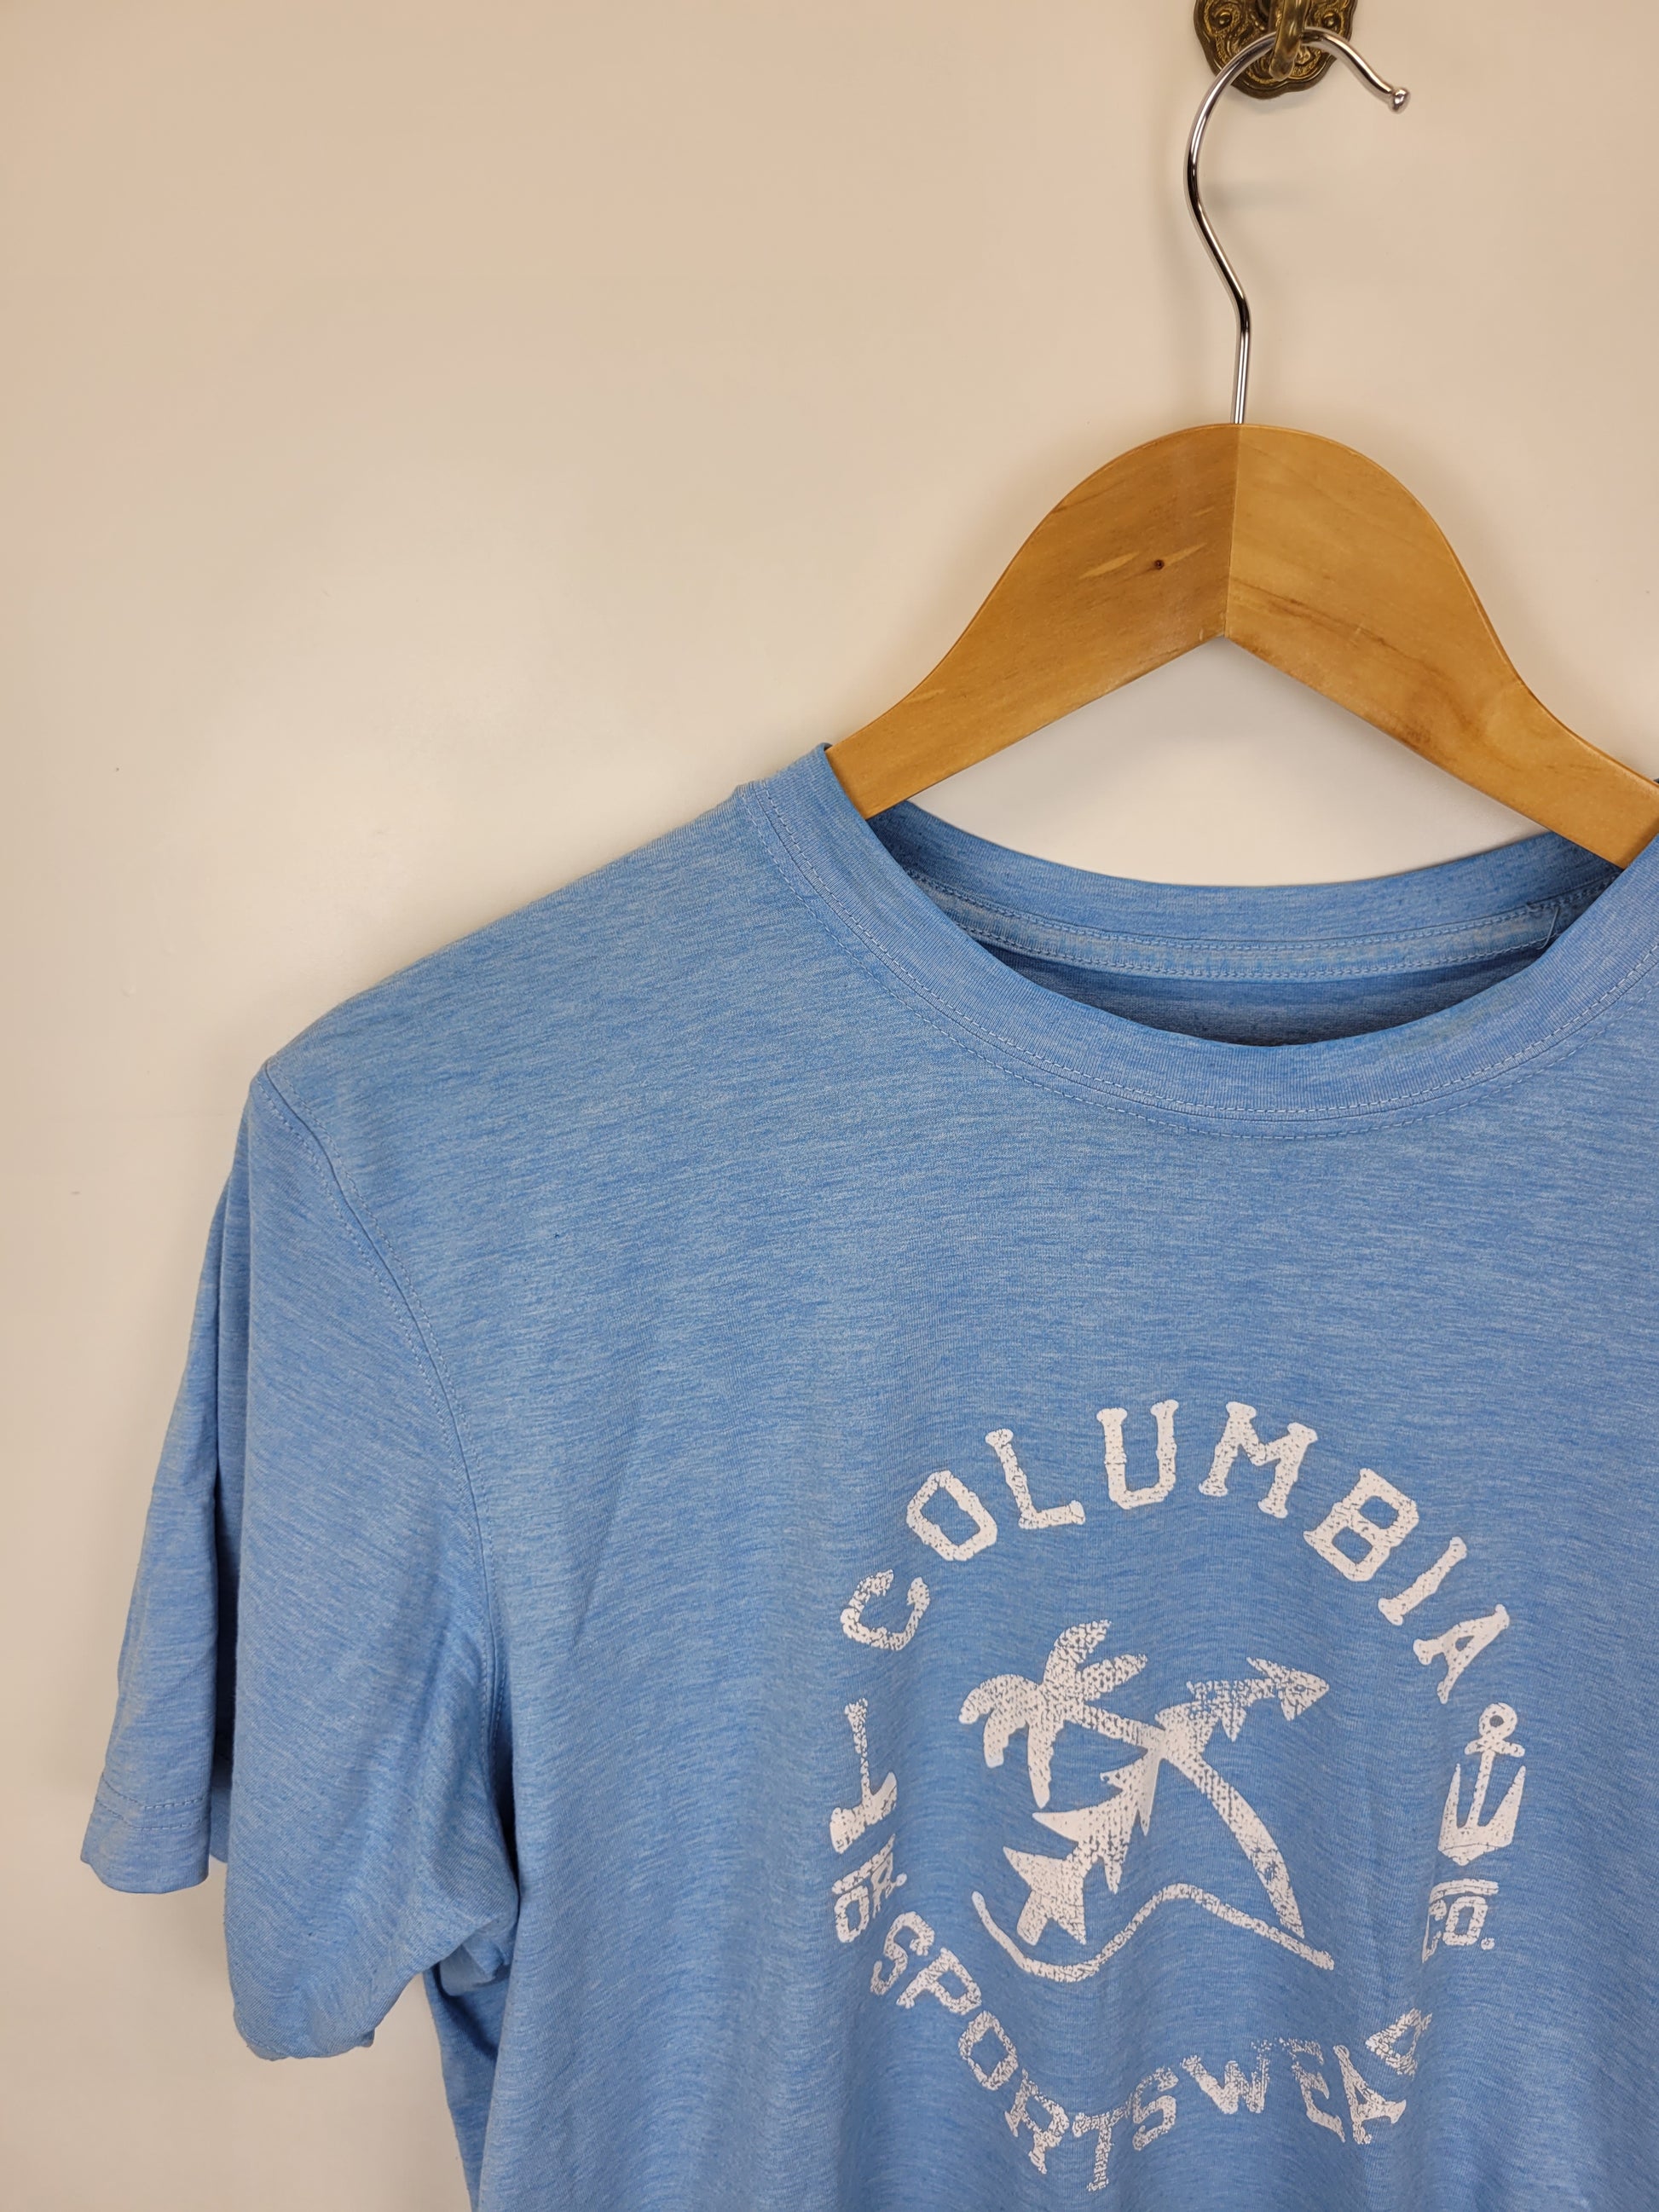 Hellblaues T-Shirt von Columbia in Größe L (Damen) - wanderlich.com